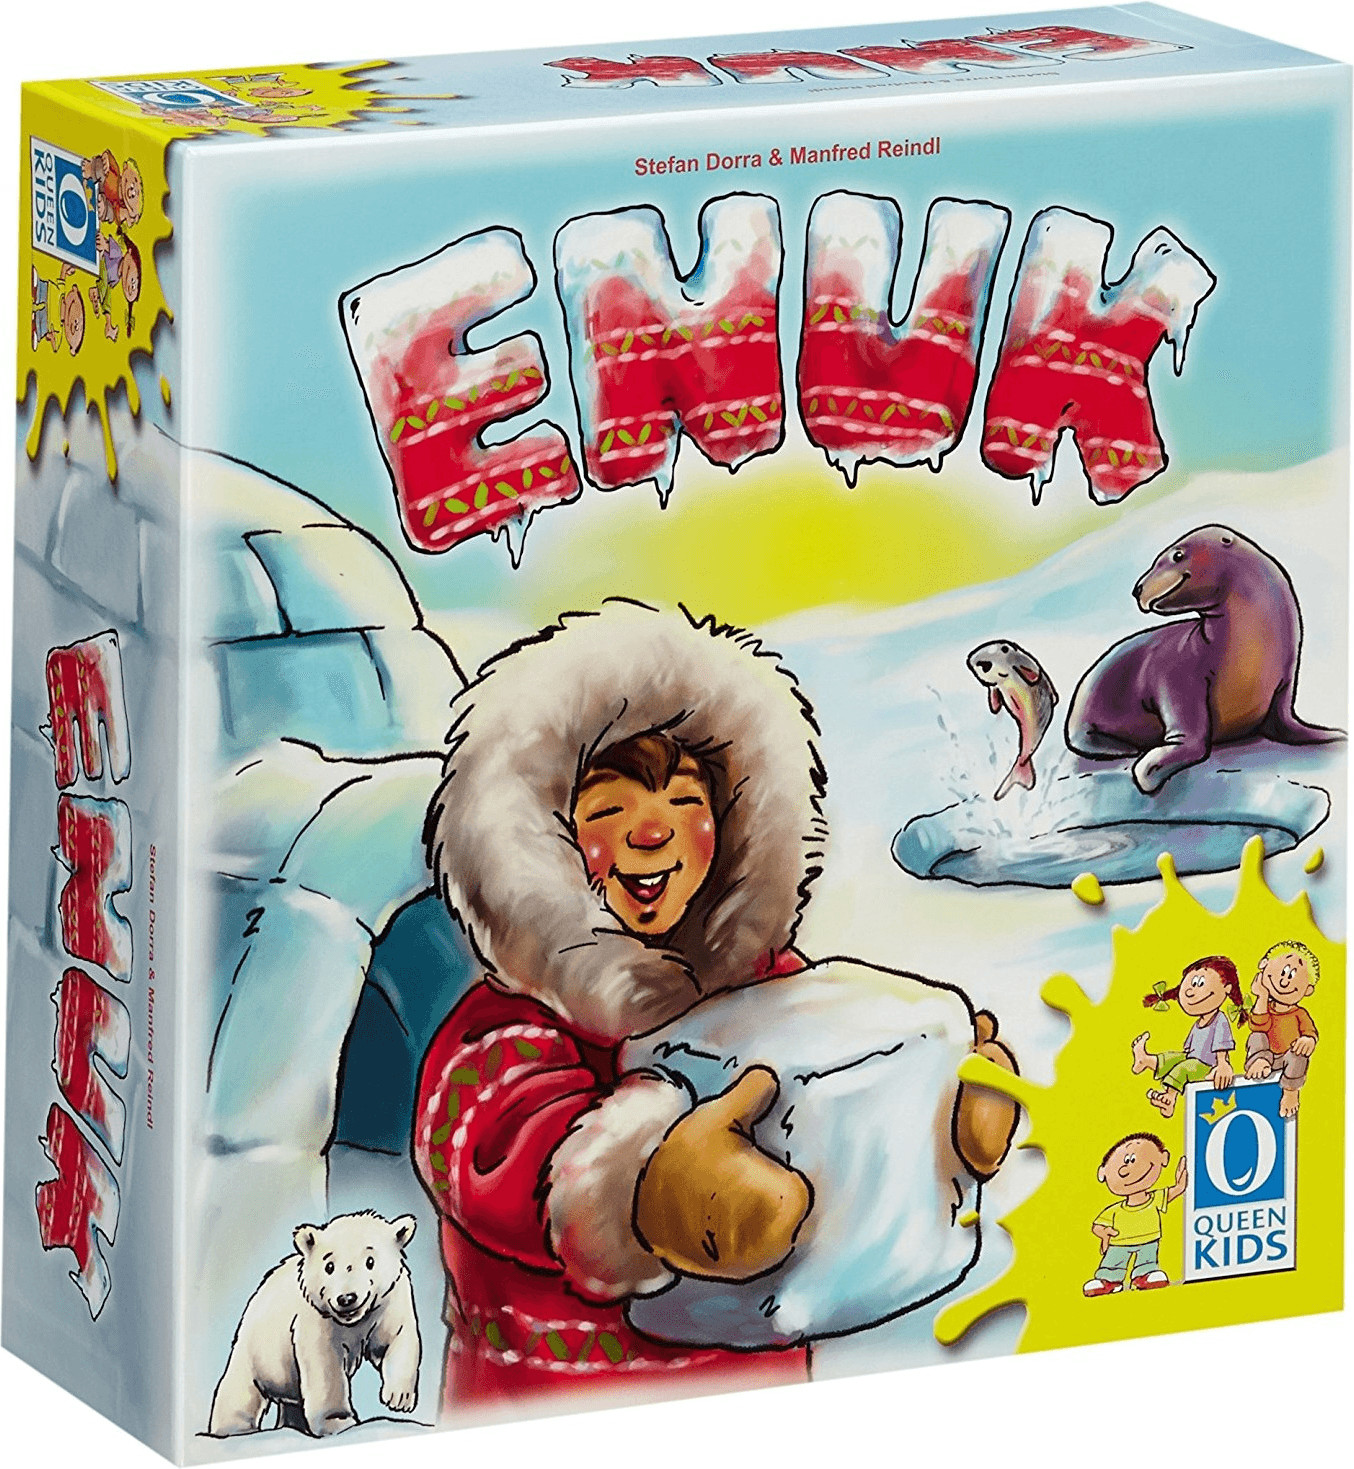 Enuk The Eskimo